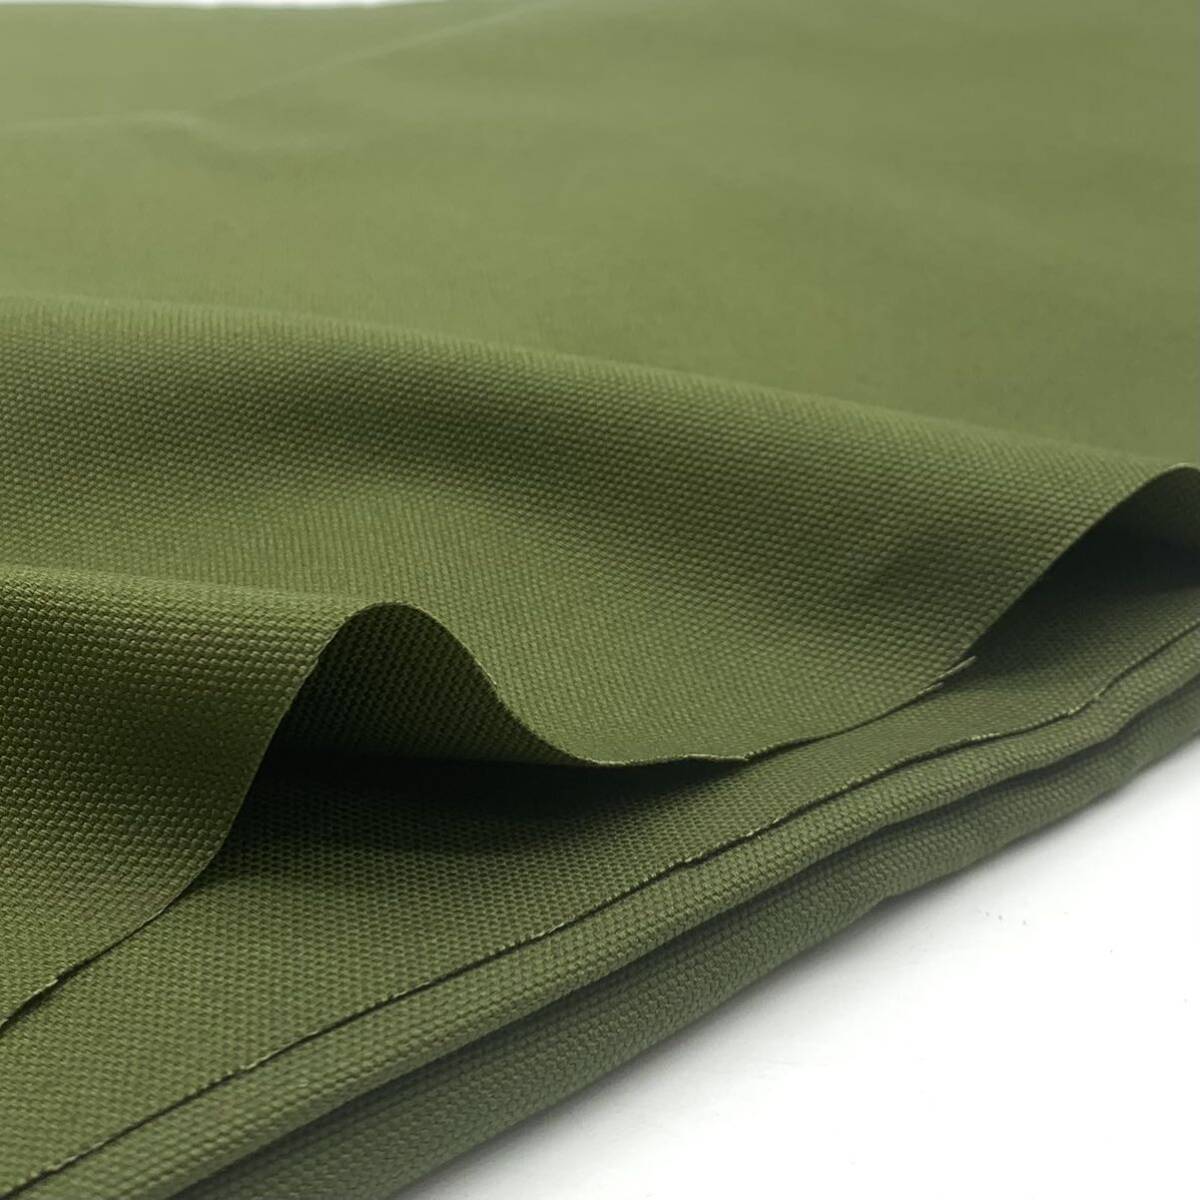 xw410 キャンバス 3m モスグリーン 綿 100% ハンドメイド 服飾雑貨 ソフト帆布 11号 緑色 日本製の画像3